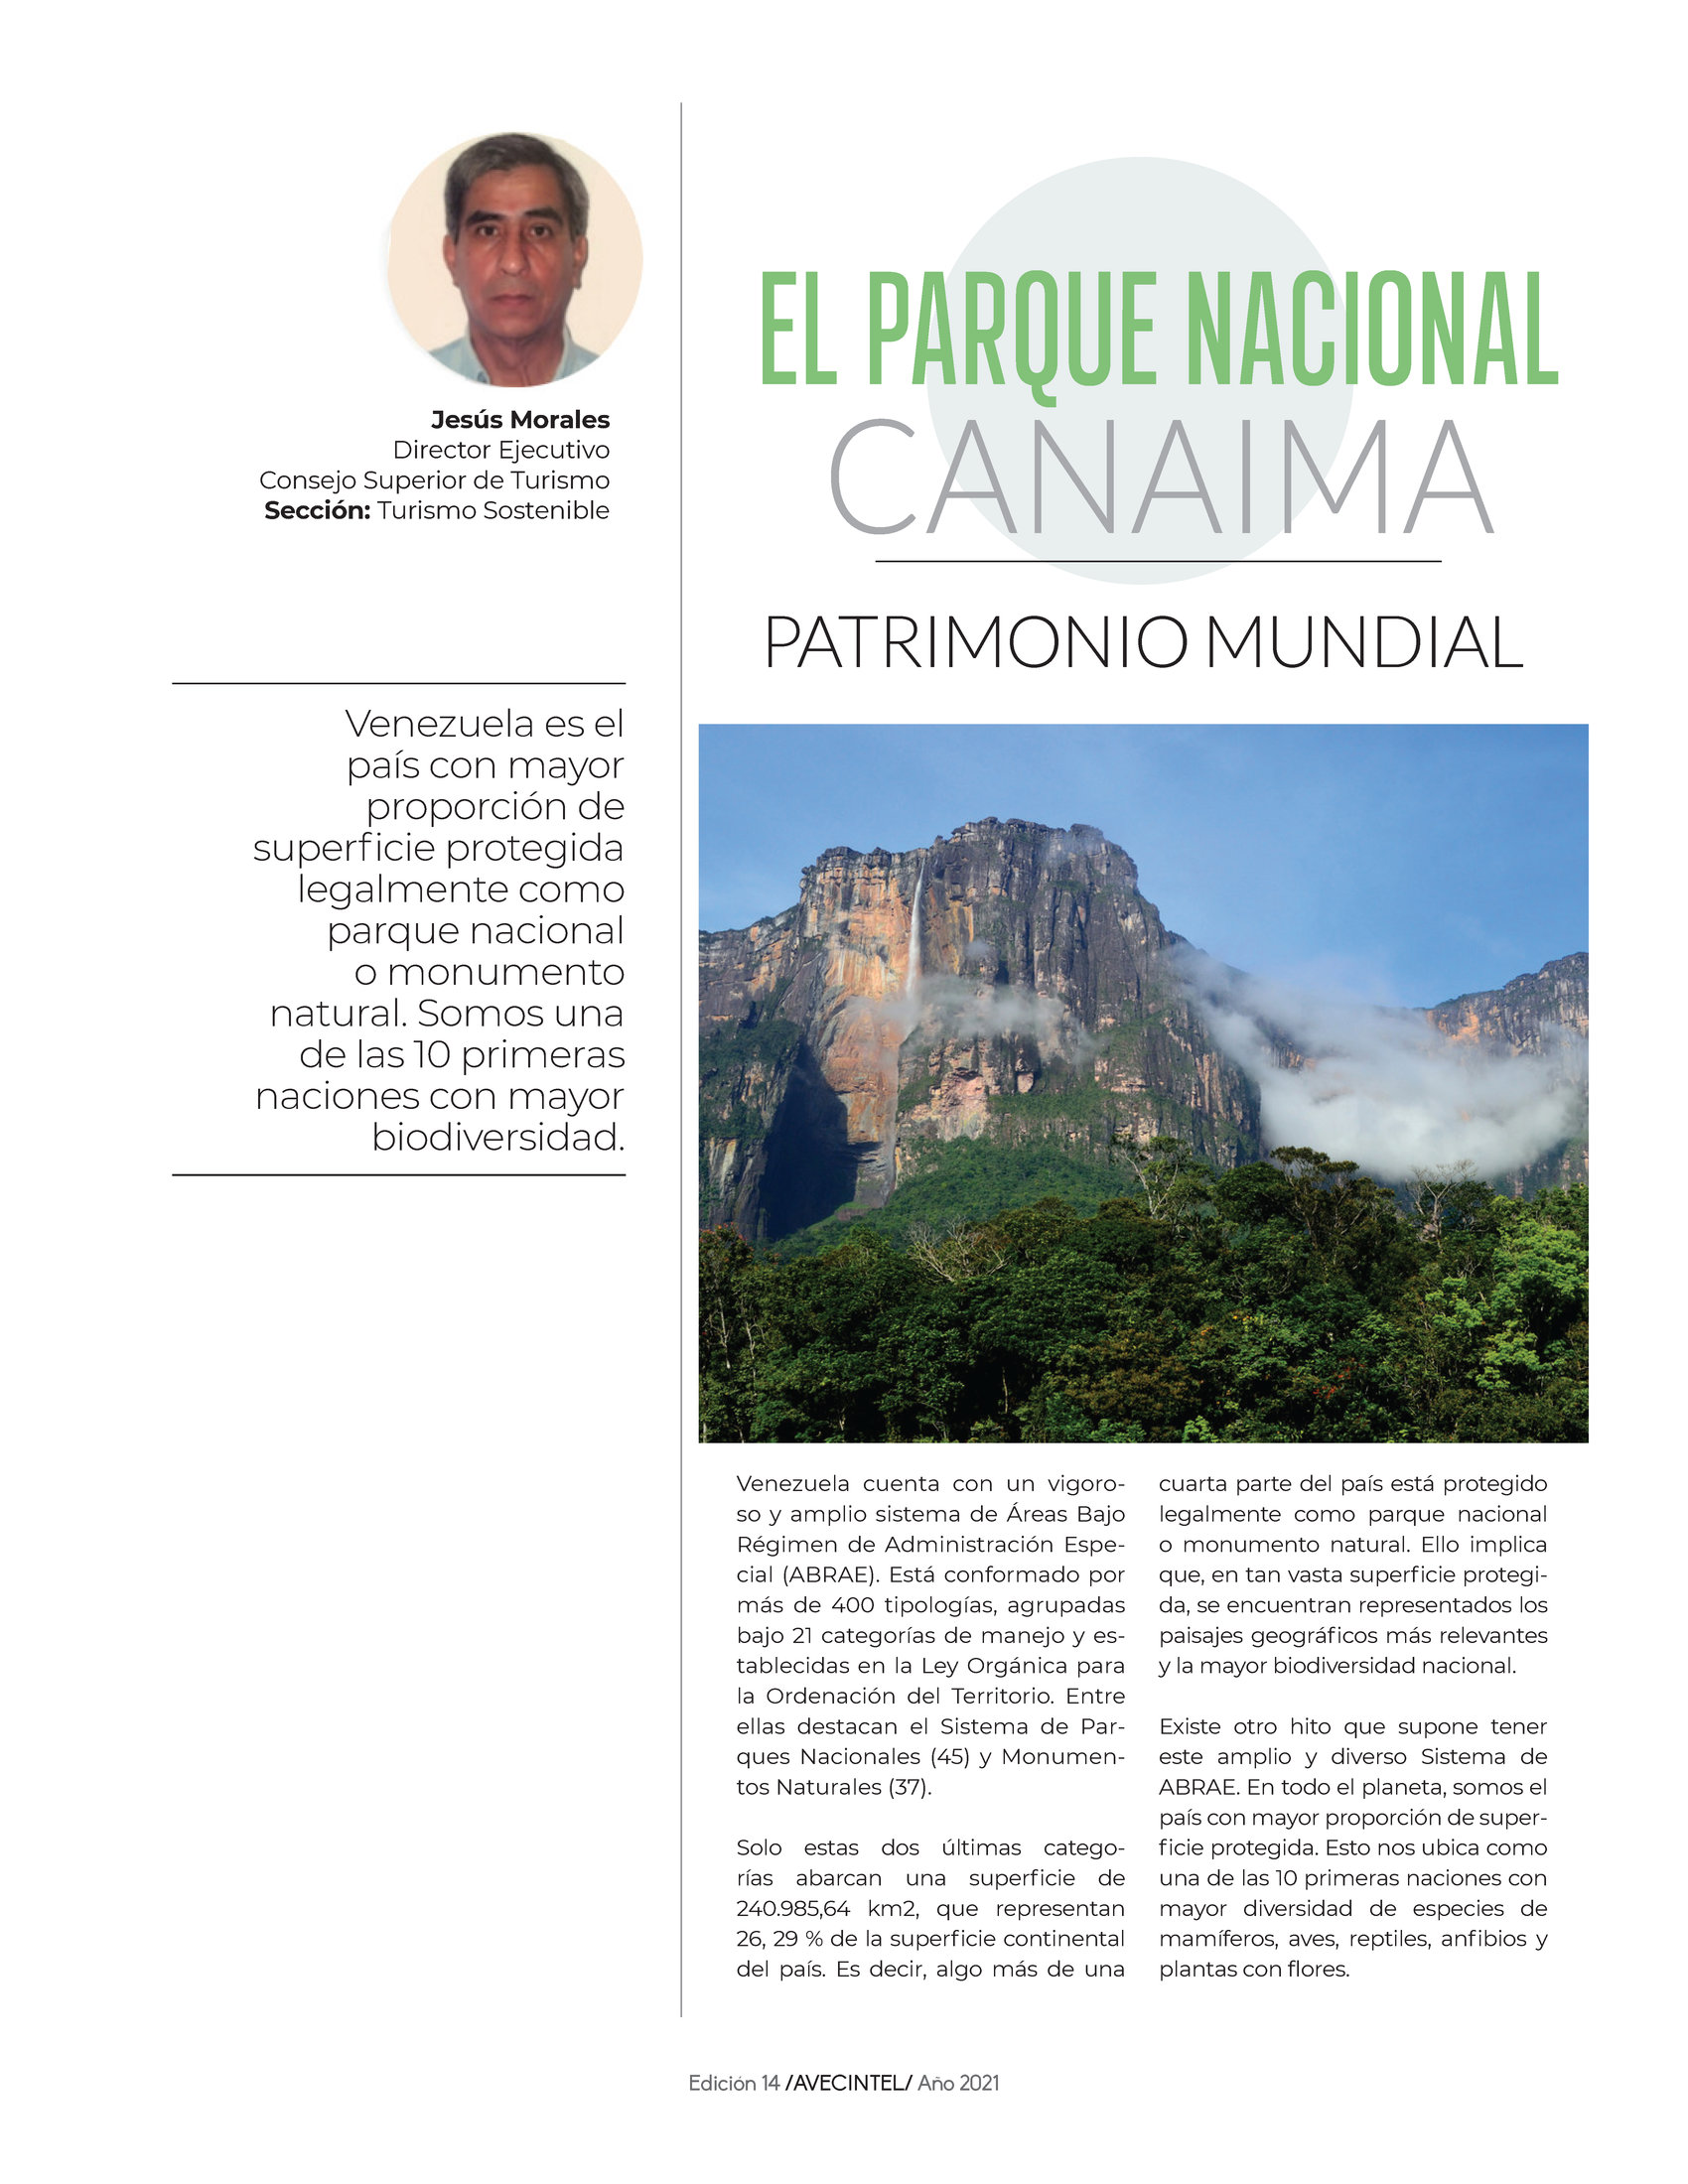 76-REV Jesus Morales Parque Nacional Canaima Patrimonio Mundial